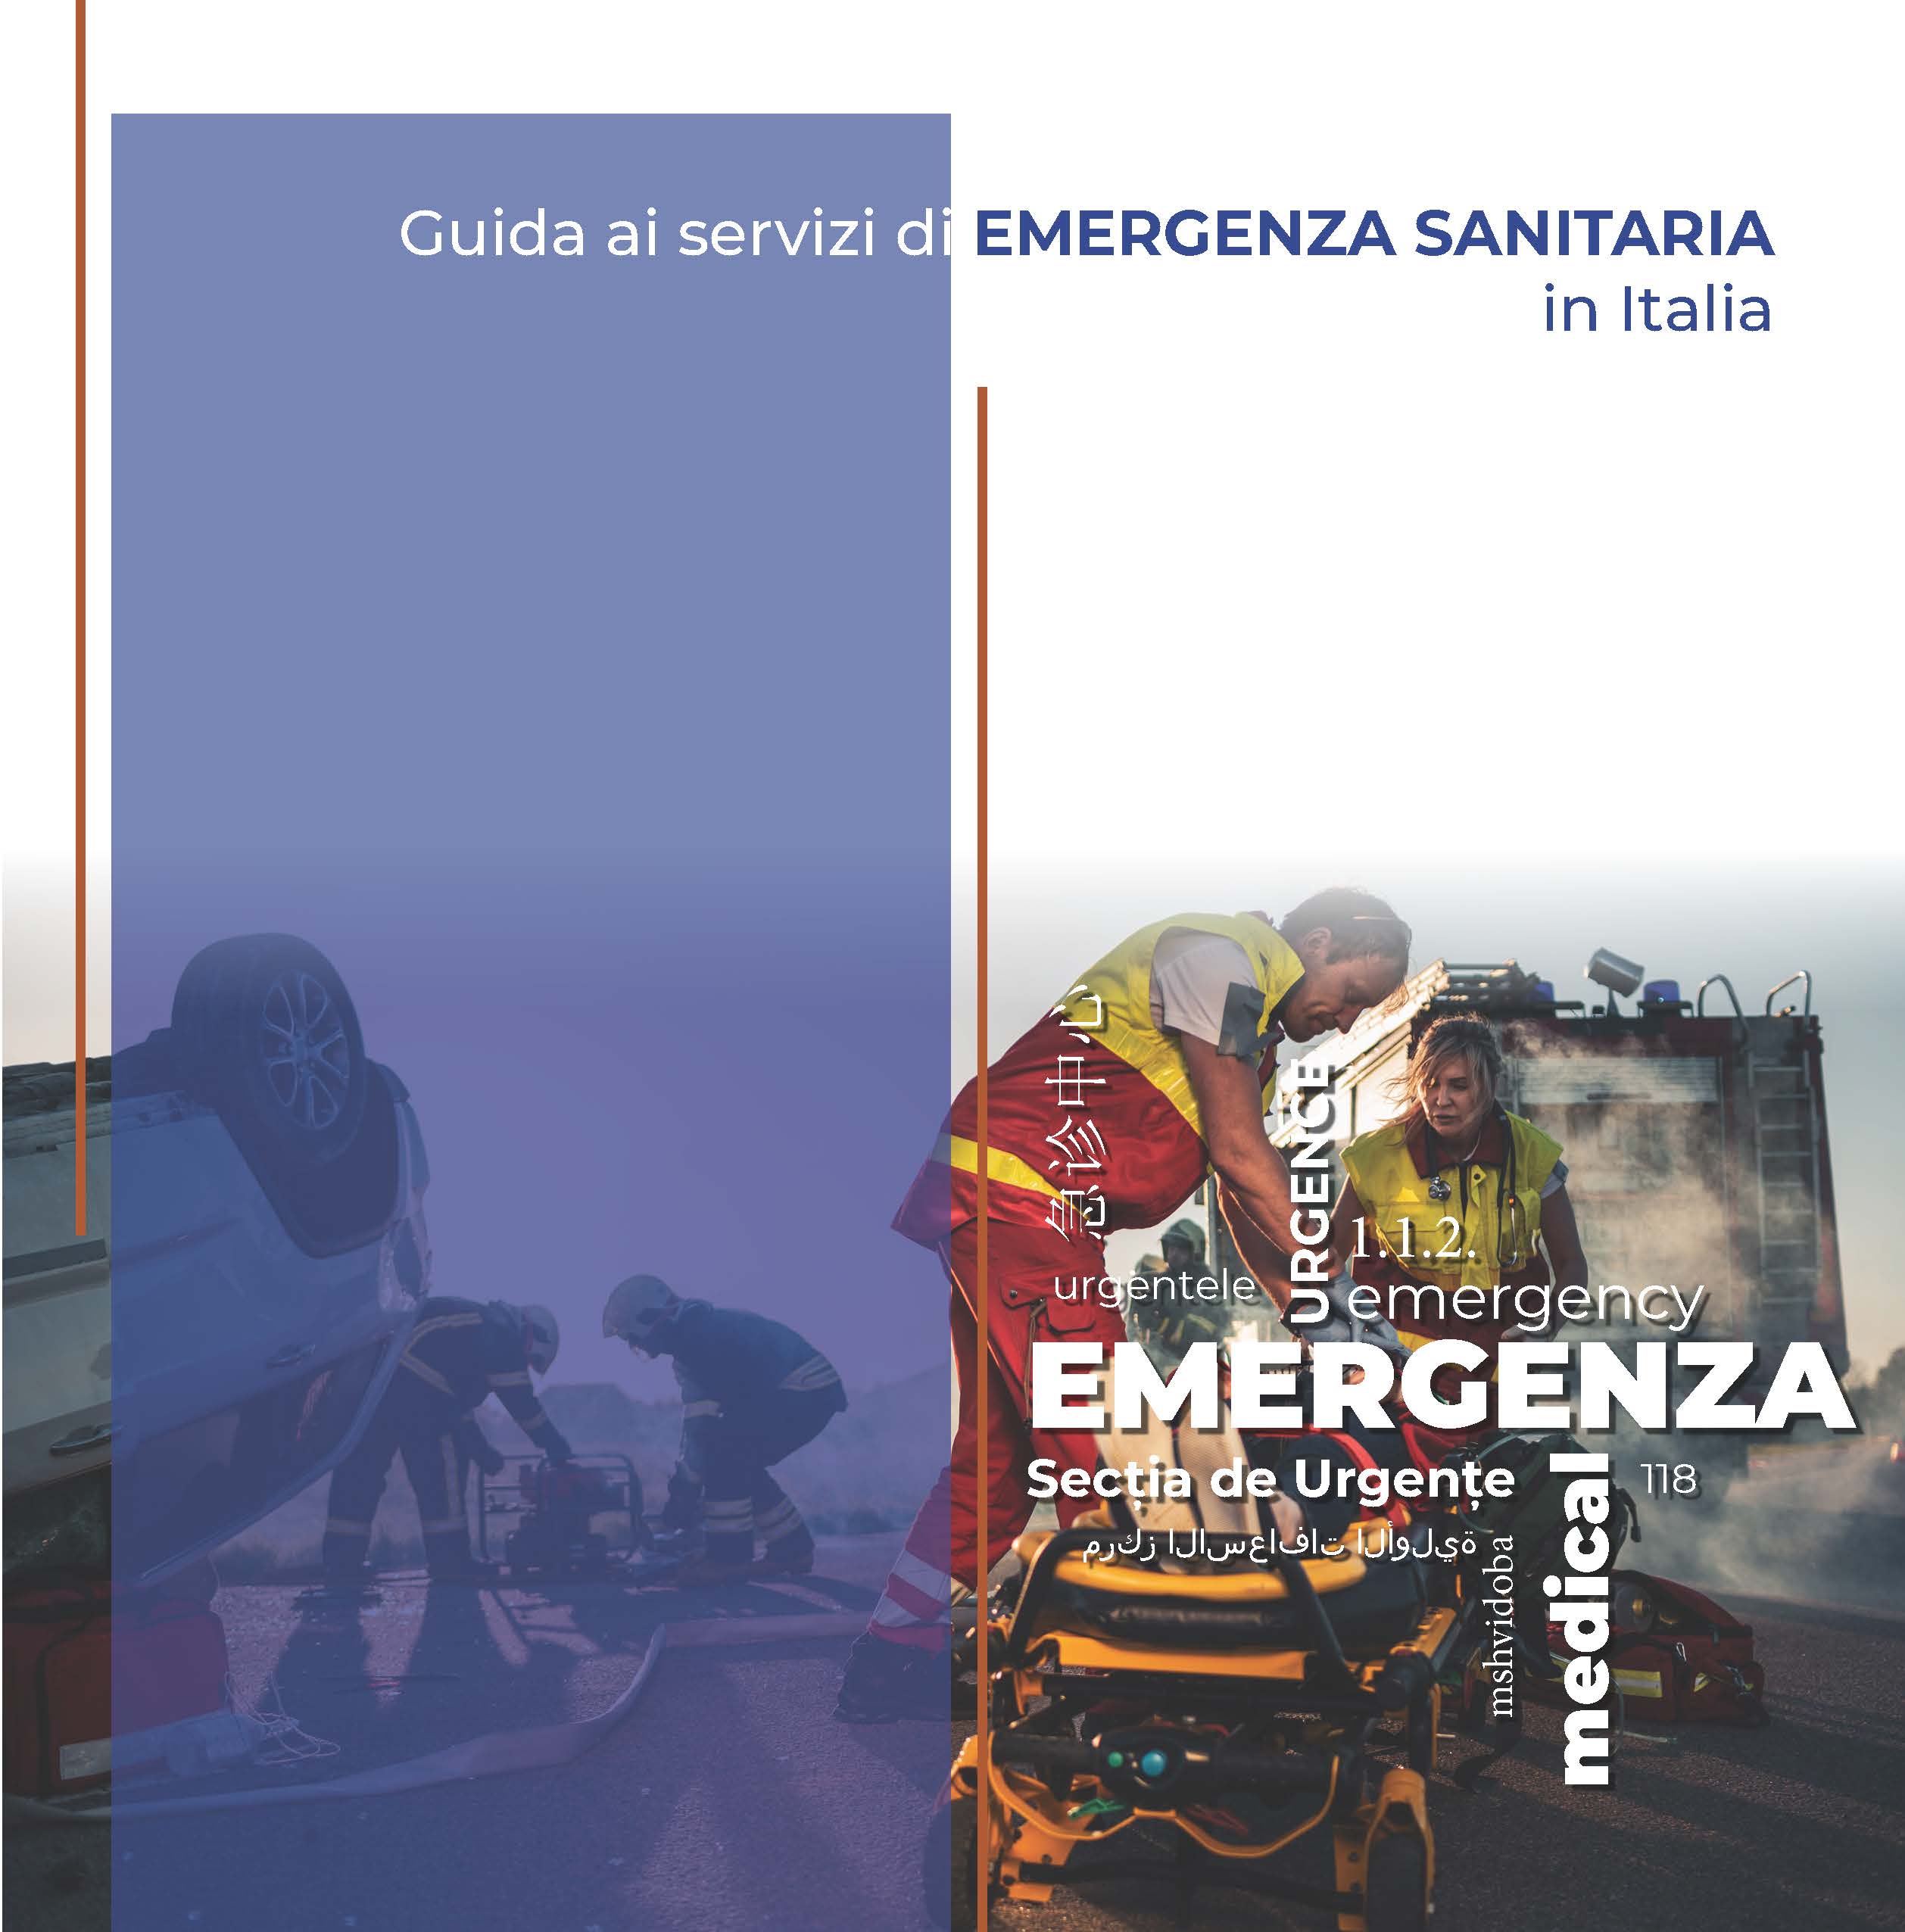 Immagine di copertina per Guida ai servizi di EMERGENZA SANITARIA in Italia